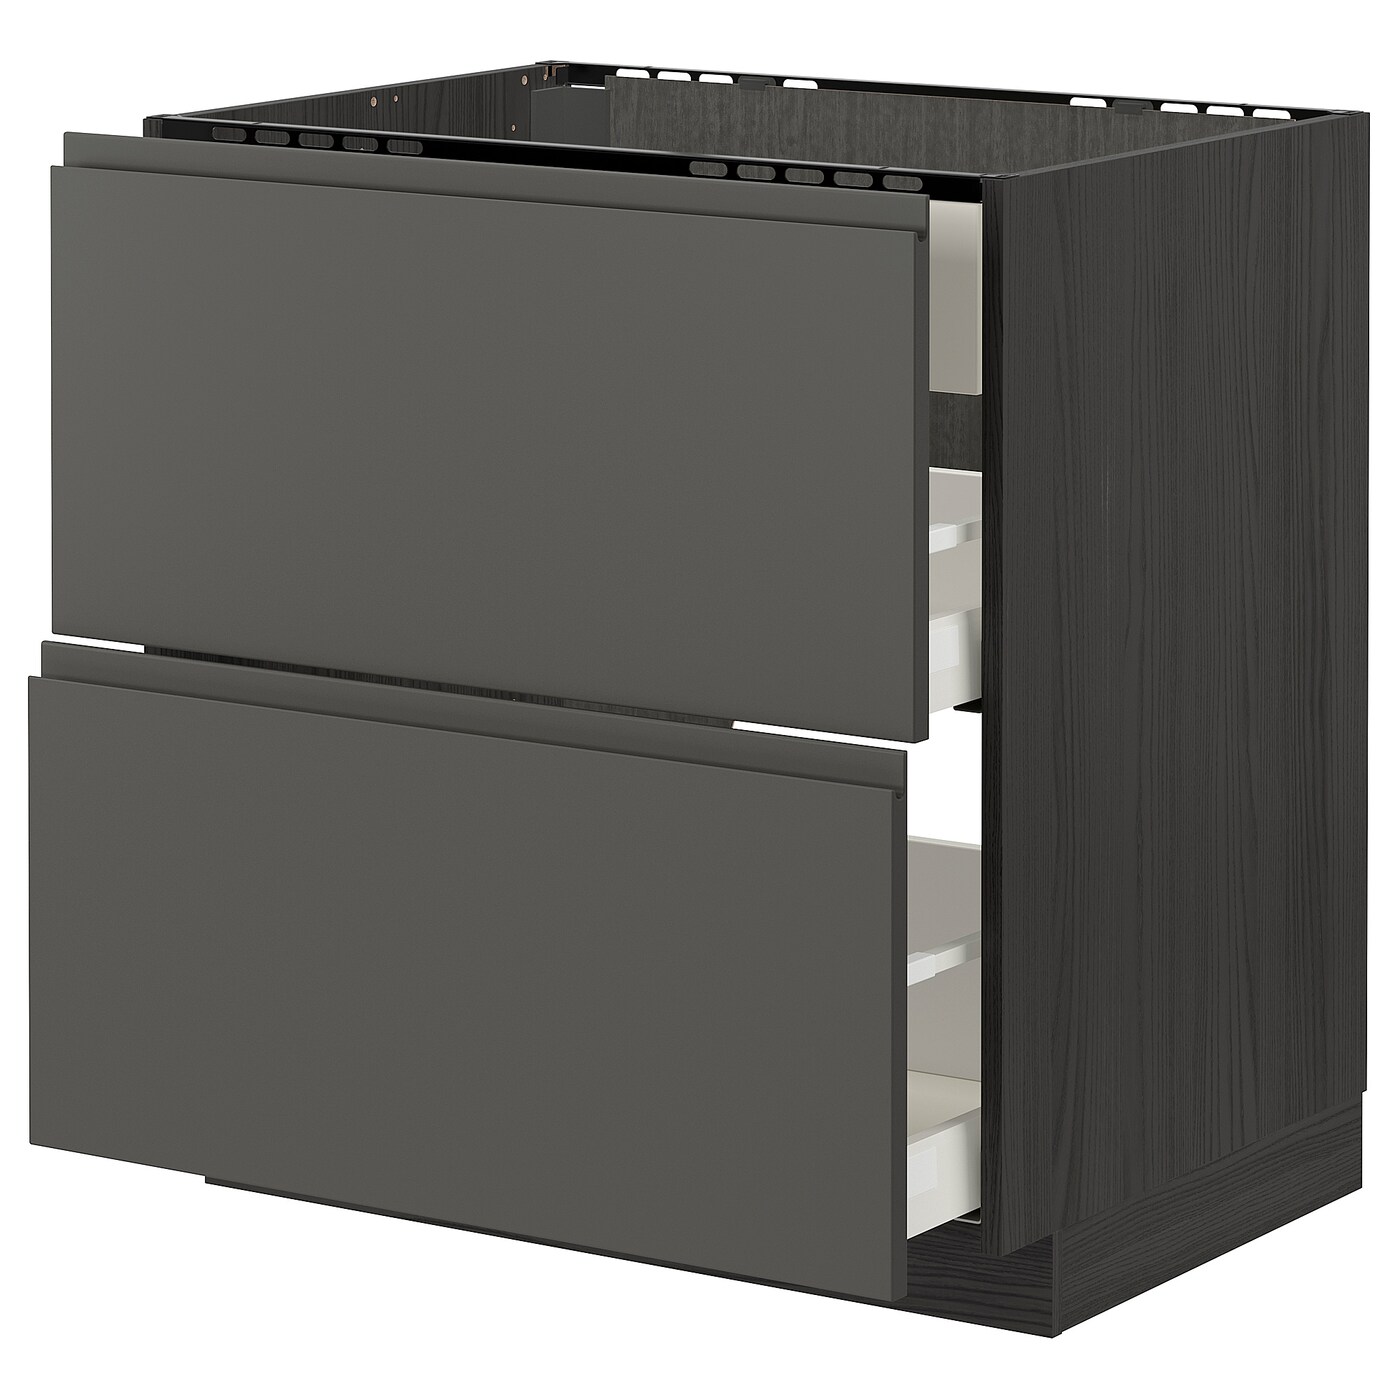 Напольный шкаф - METOD / MAXIMERA IKEA/ МЕТОД/ МАКСИМЕРА ИКЕА,  88х80 см, черный/серый